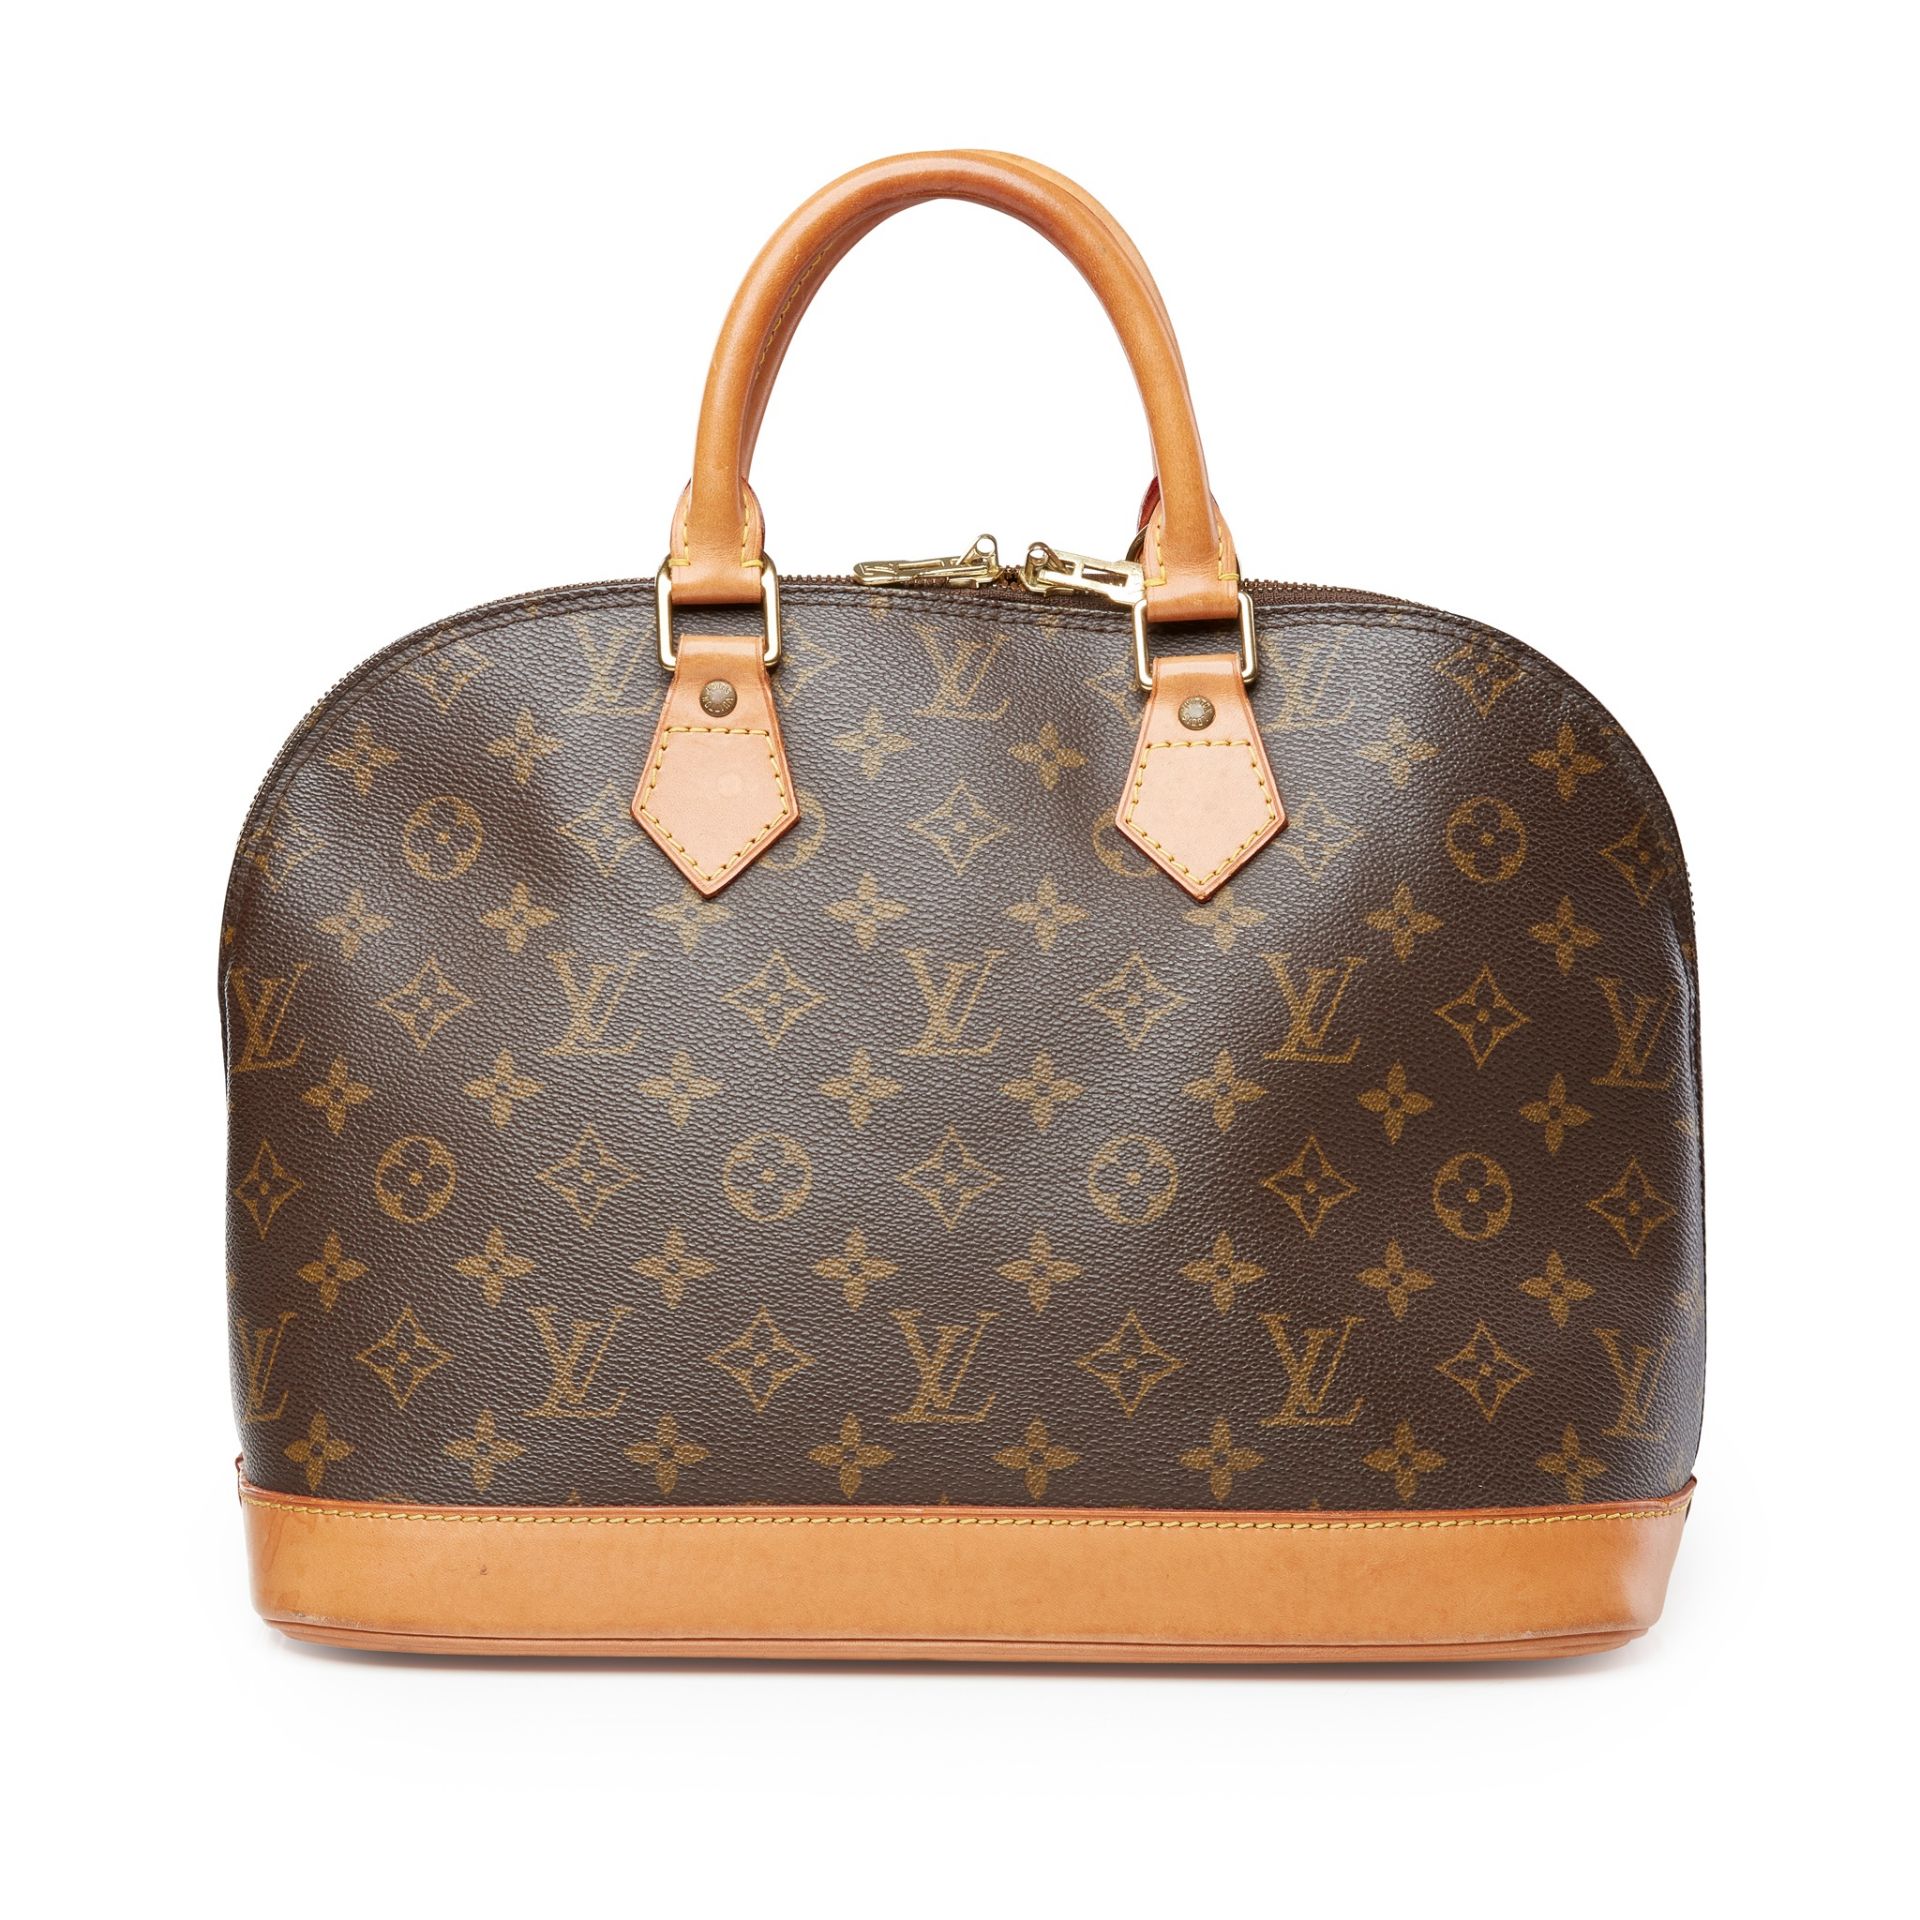 An Alma PM handbag, Louis Vuitton